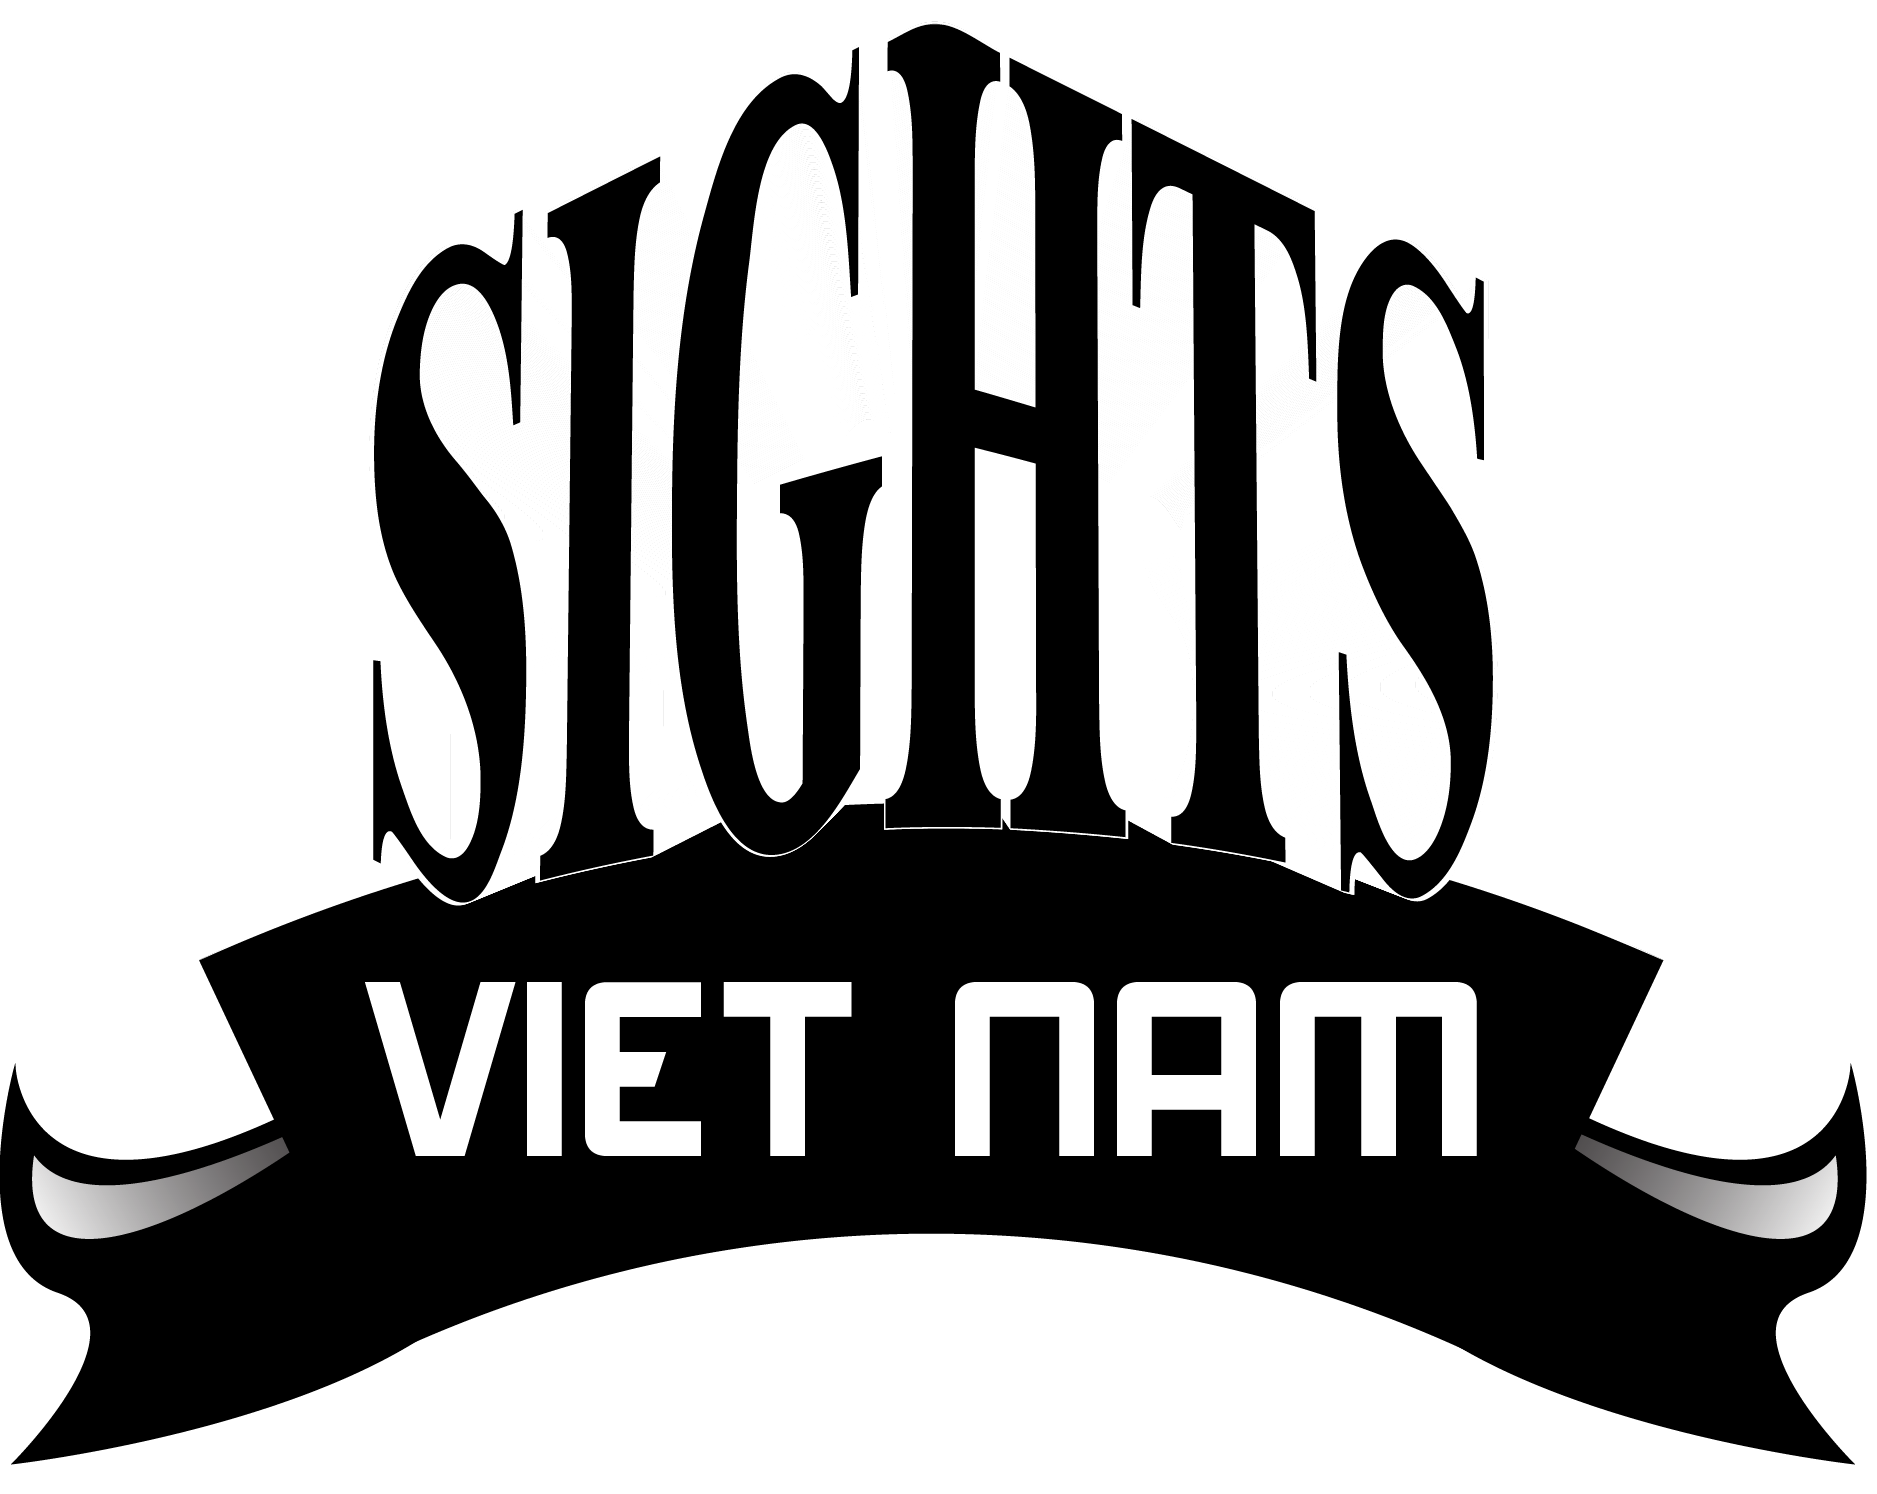 Sights VietNam